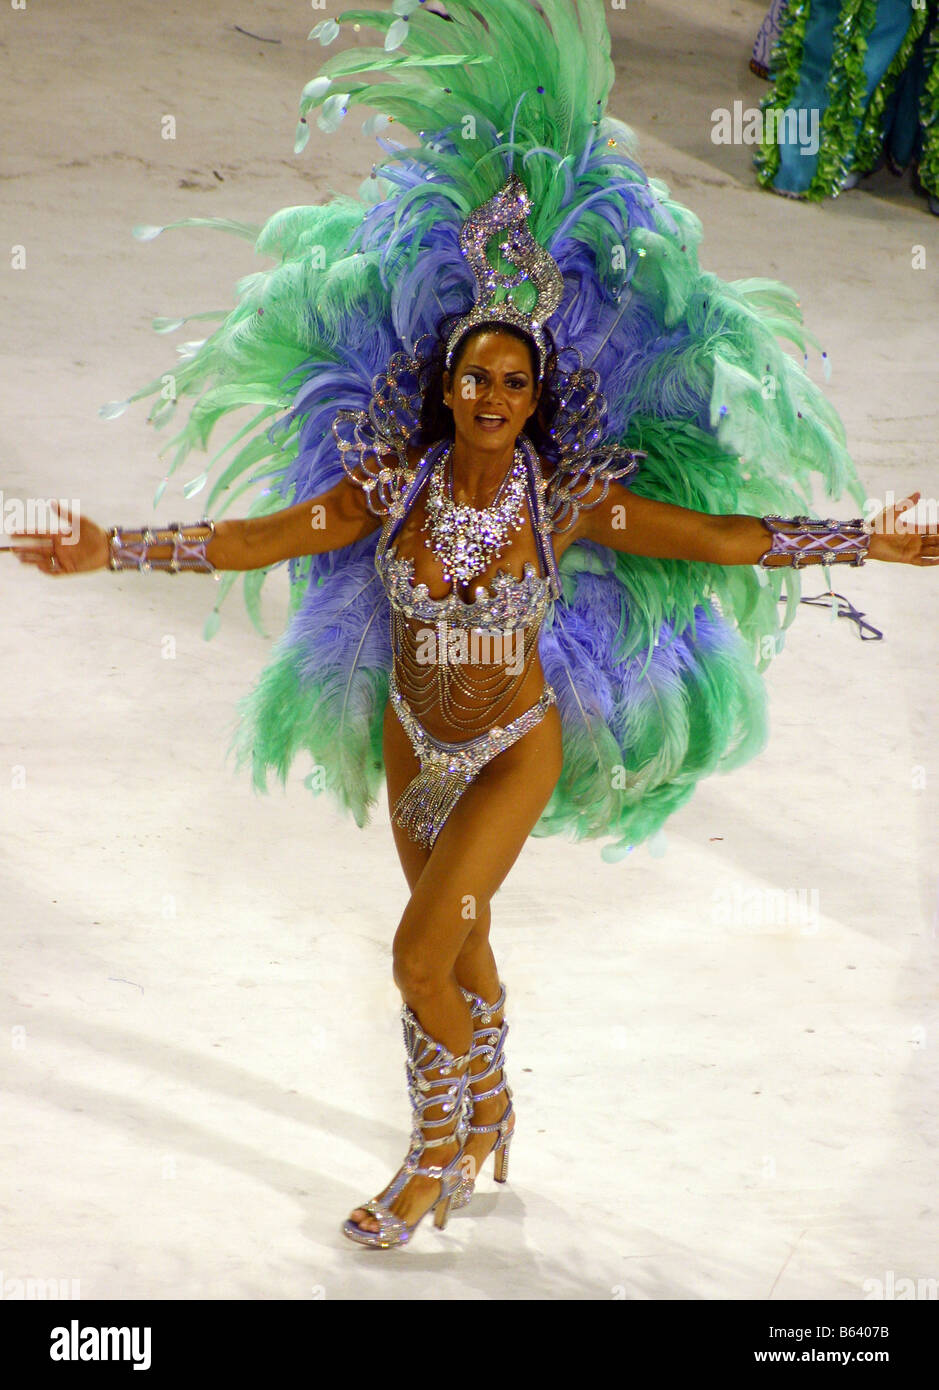 Rio carnival immagini e fotografie stock ad alta risoluzione - Alamy